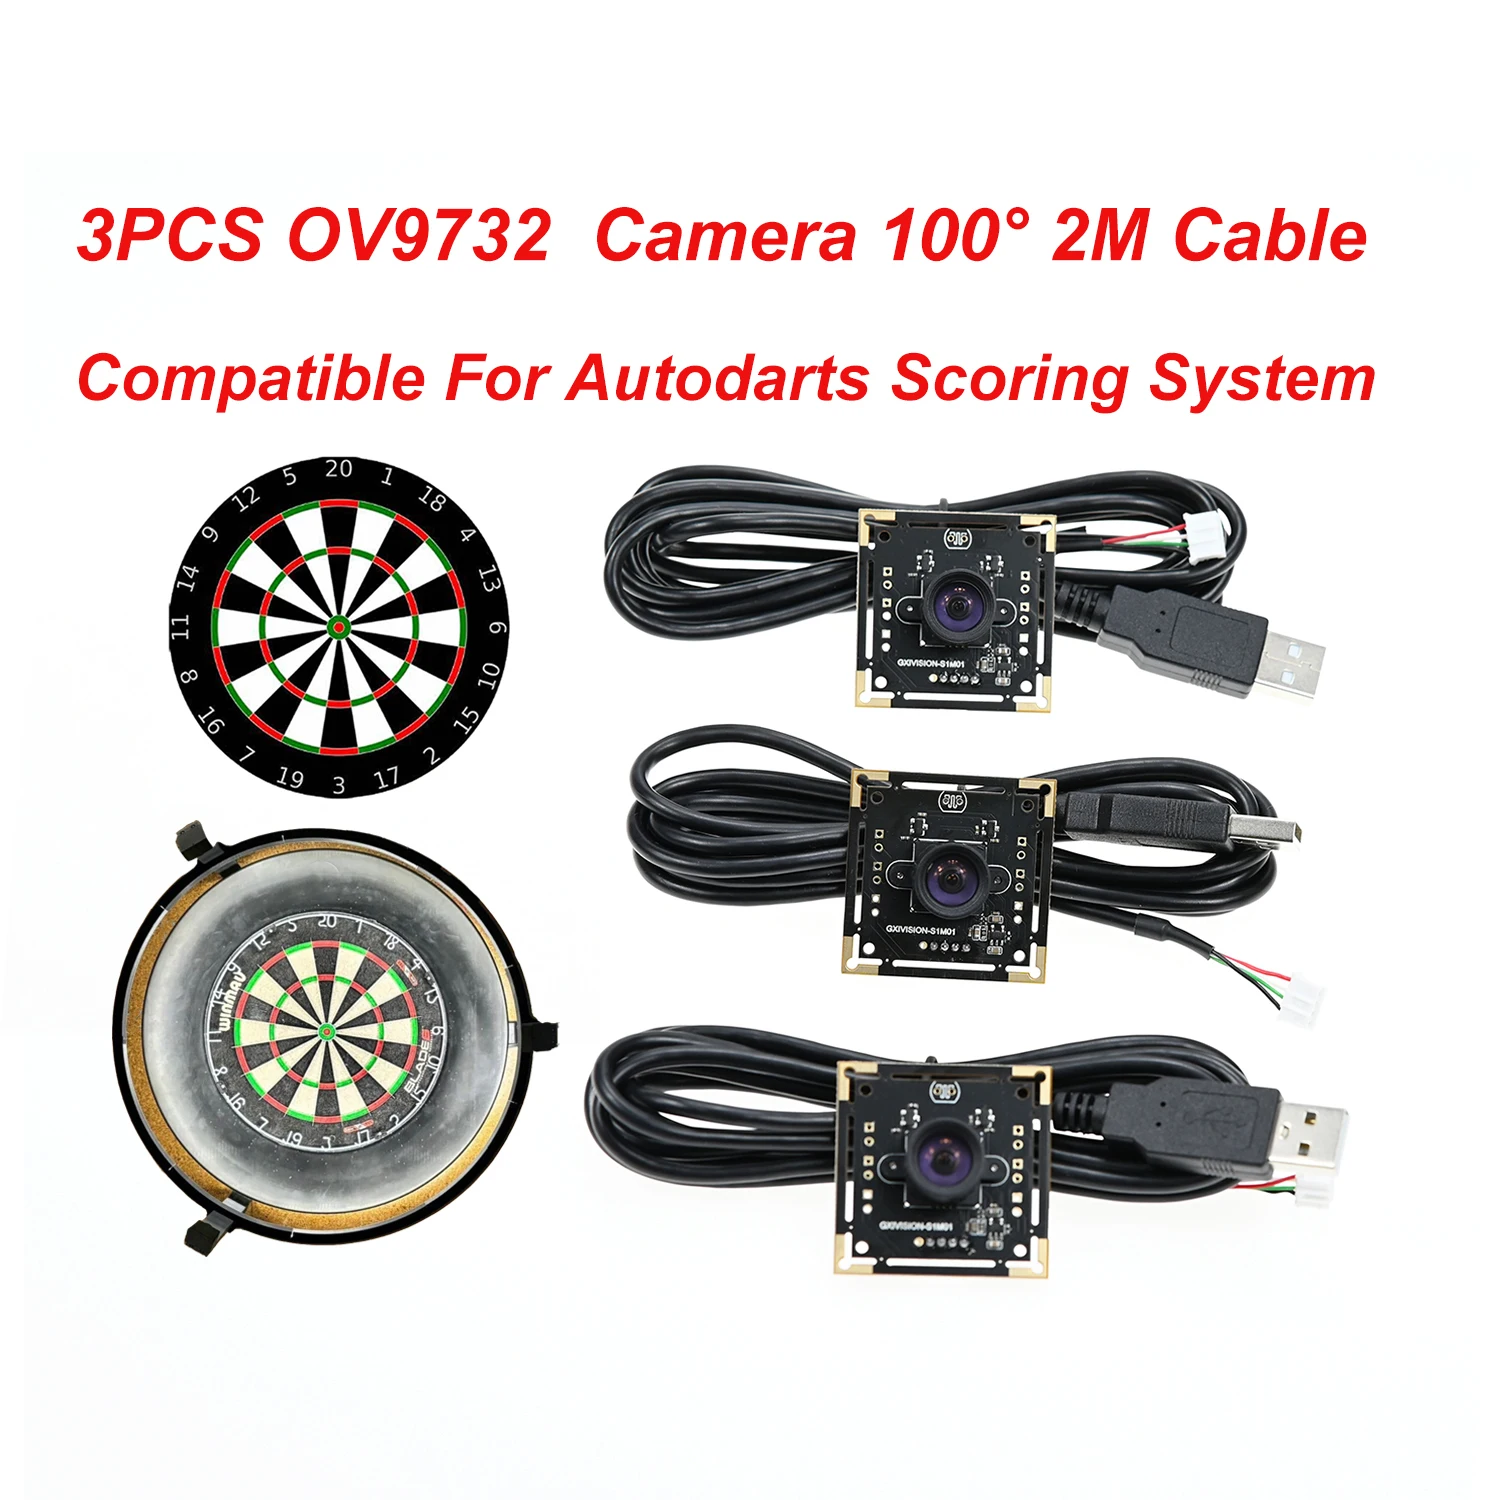 GXIVISION OV9732 1MP 30FPS 2M Kabel 100 Grad USB-Kameramodul, 3 Stück OV2735、IMX179 Webcam kompatibel mit Autodarts.io Scoring System, debuggt und verifiziert von älteren Spielern